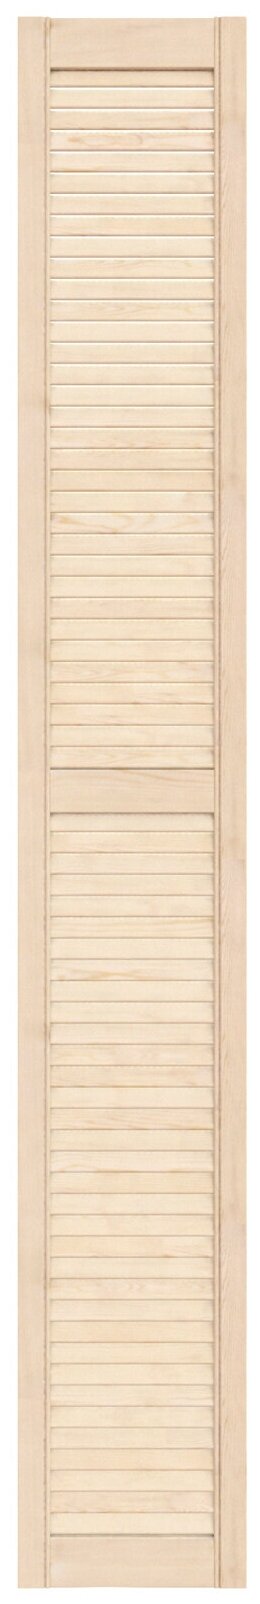 Дверь жалюзийная деревянная 294х2013мм сосна сорт Экстра / Дверца жалюзи / Створка для ширмы